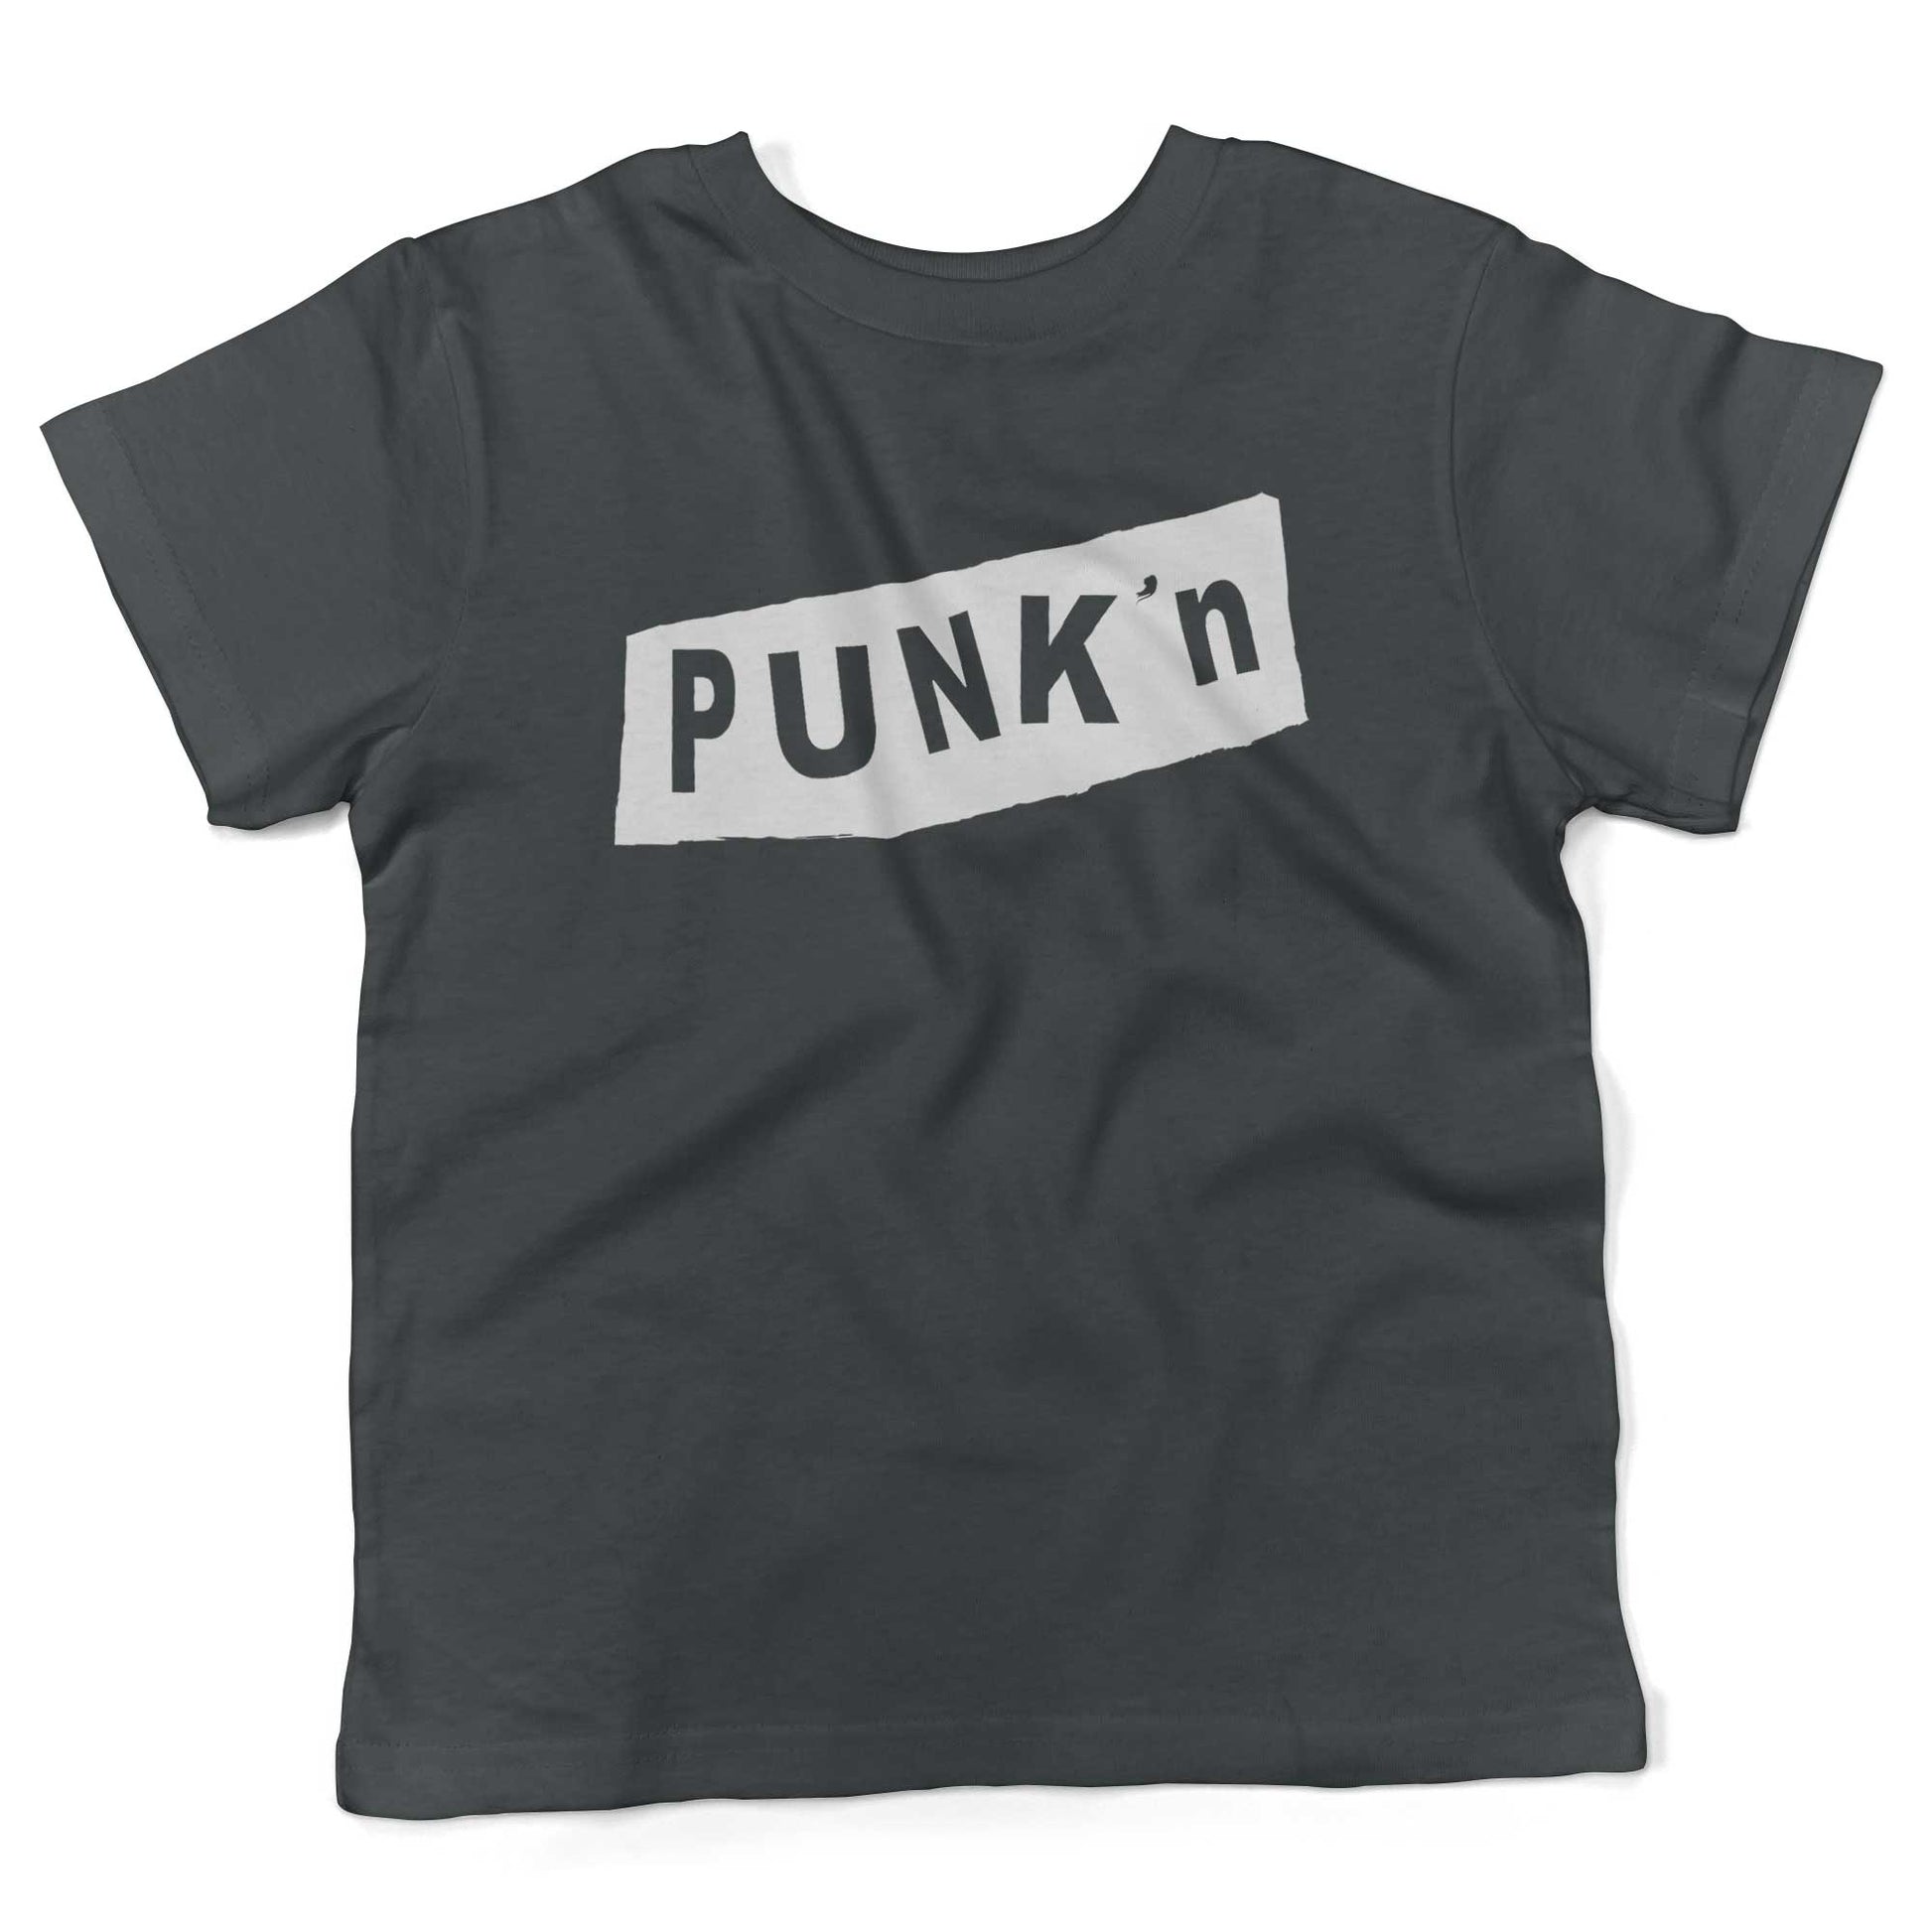 Pumpkin Punk'n Toddler Shirt-Asphalt-2T